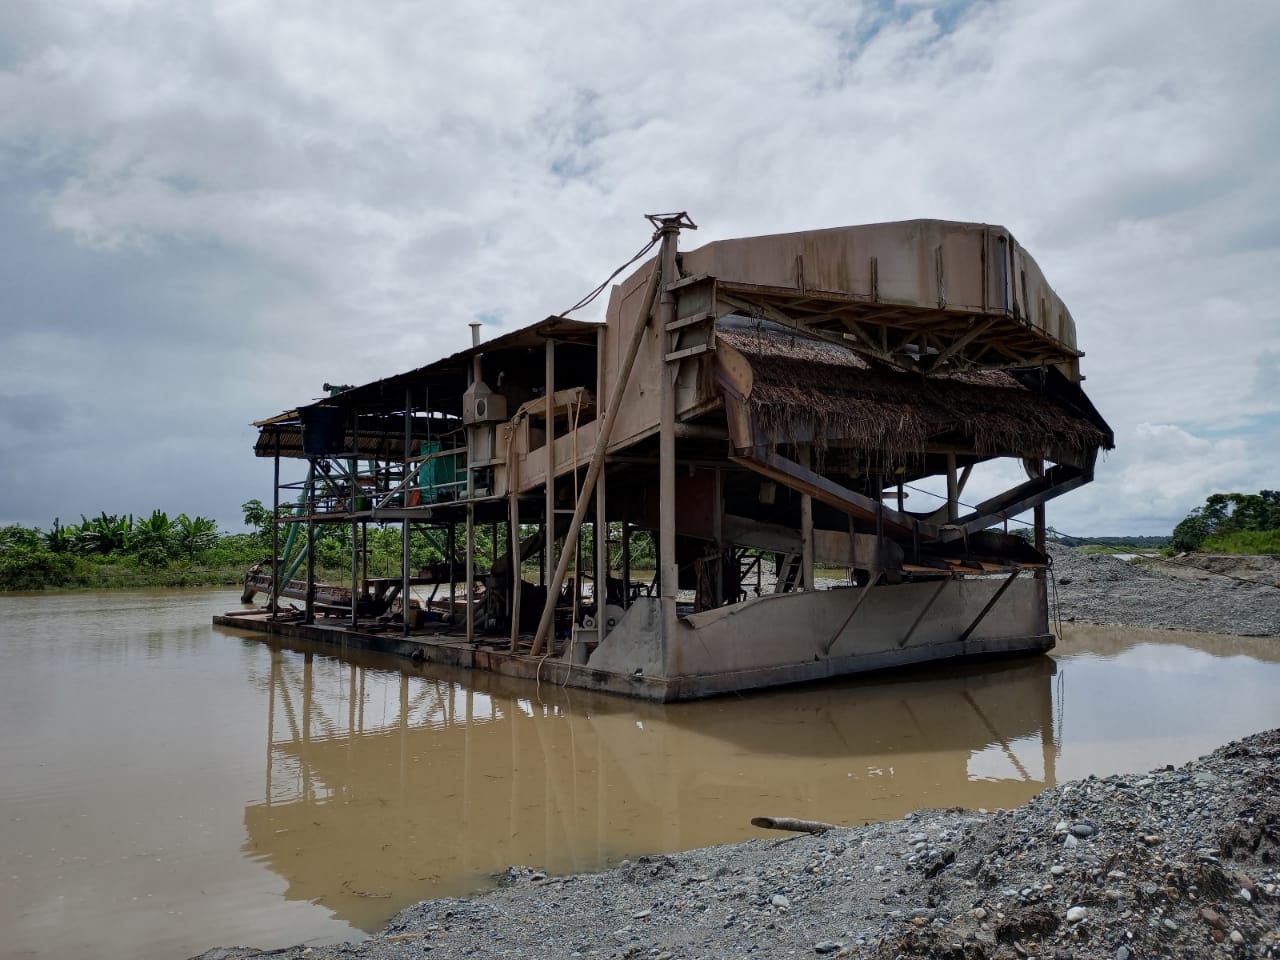 Operación en contra de la minería ilegal, afecta las finanzas del Clan del Golfo en Chocó